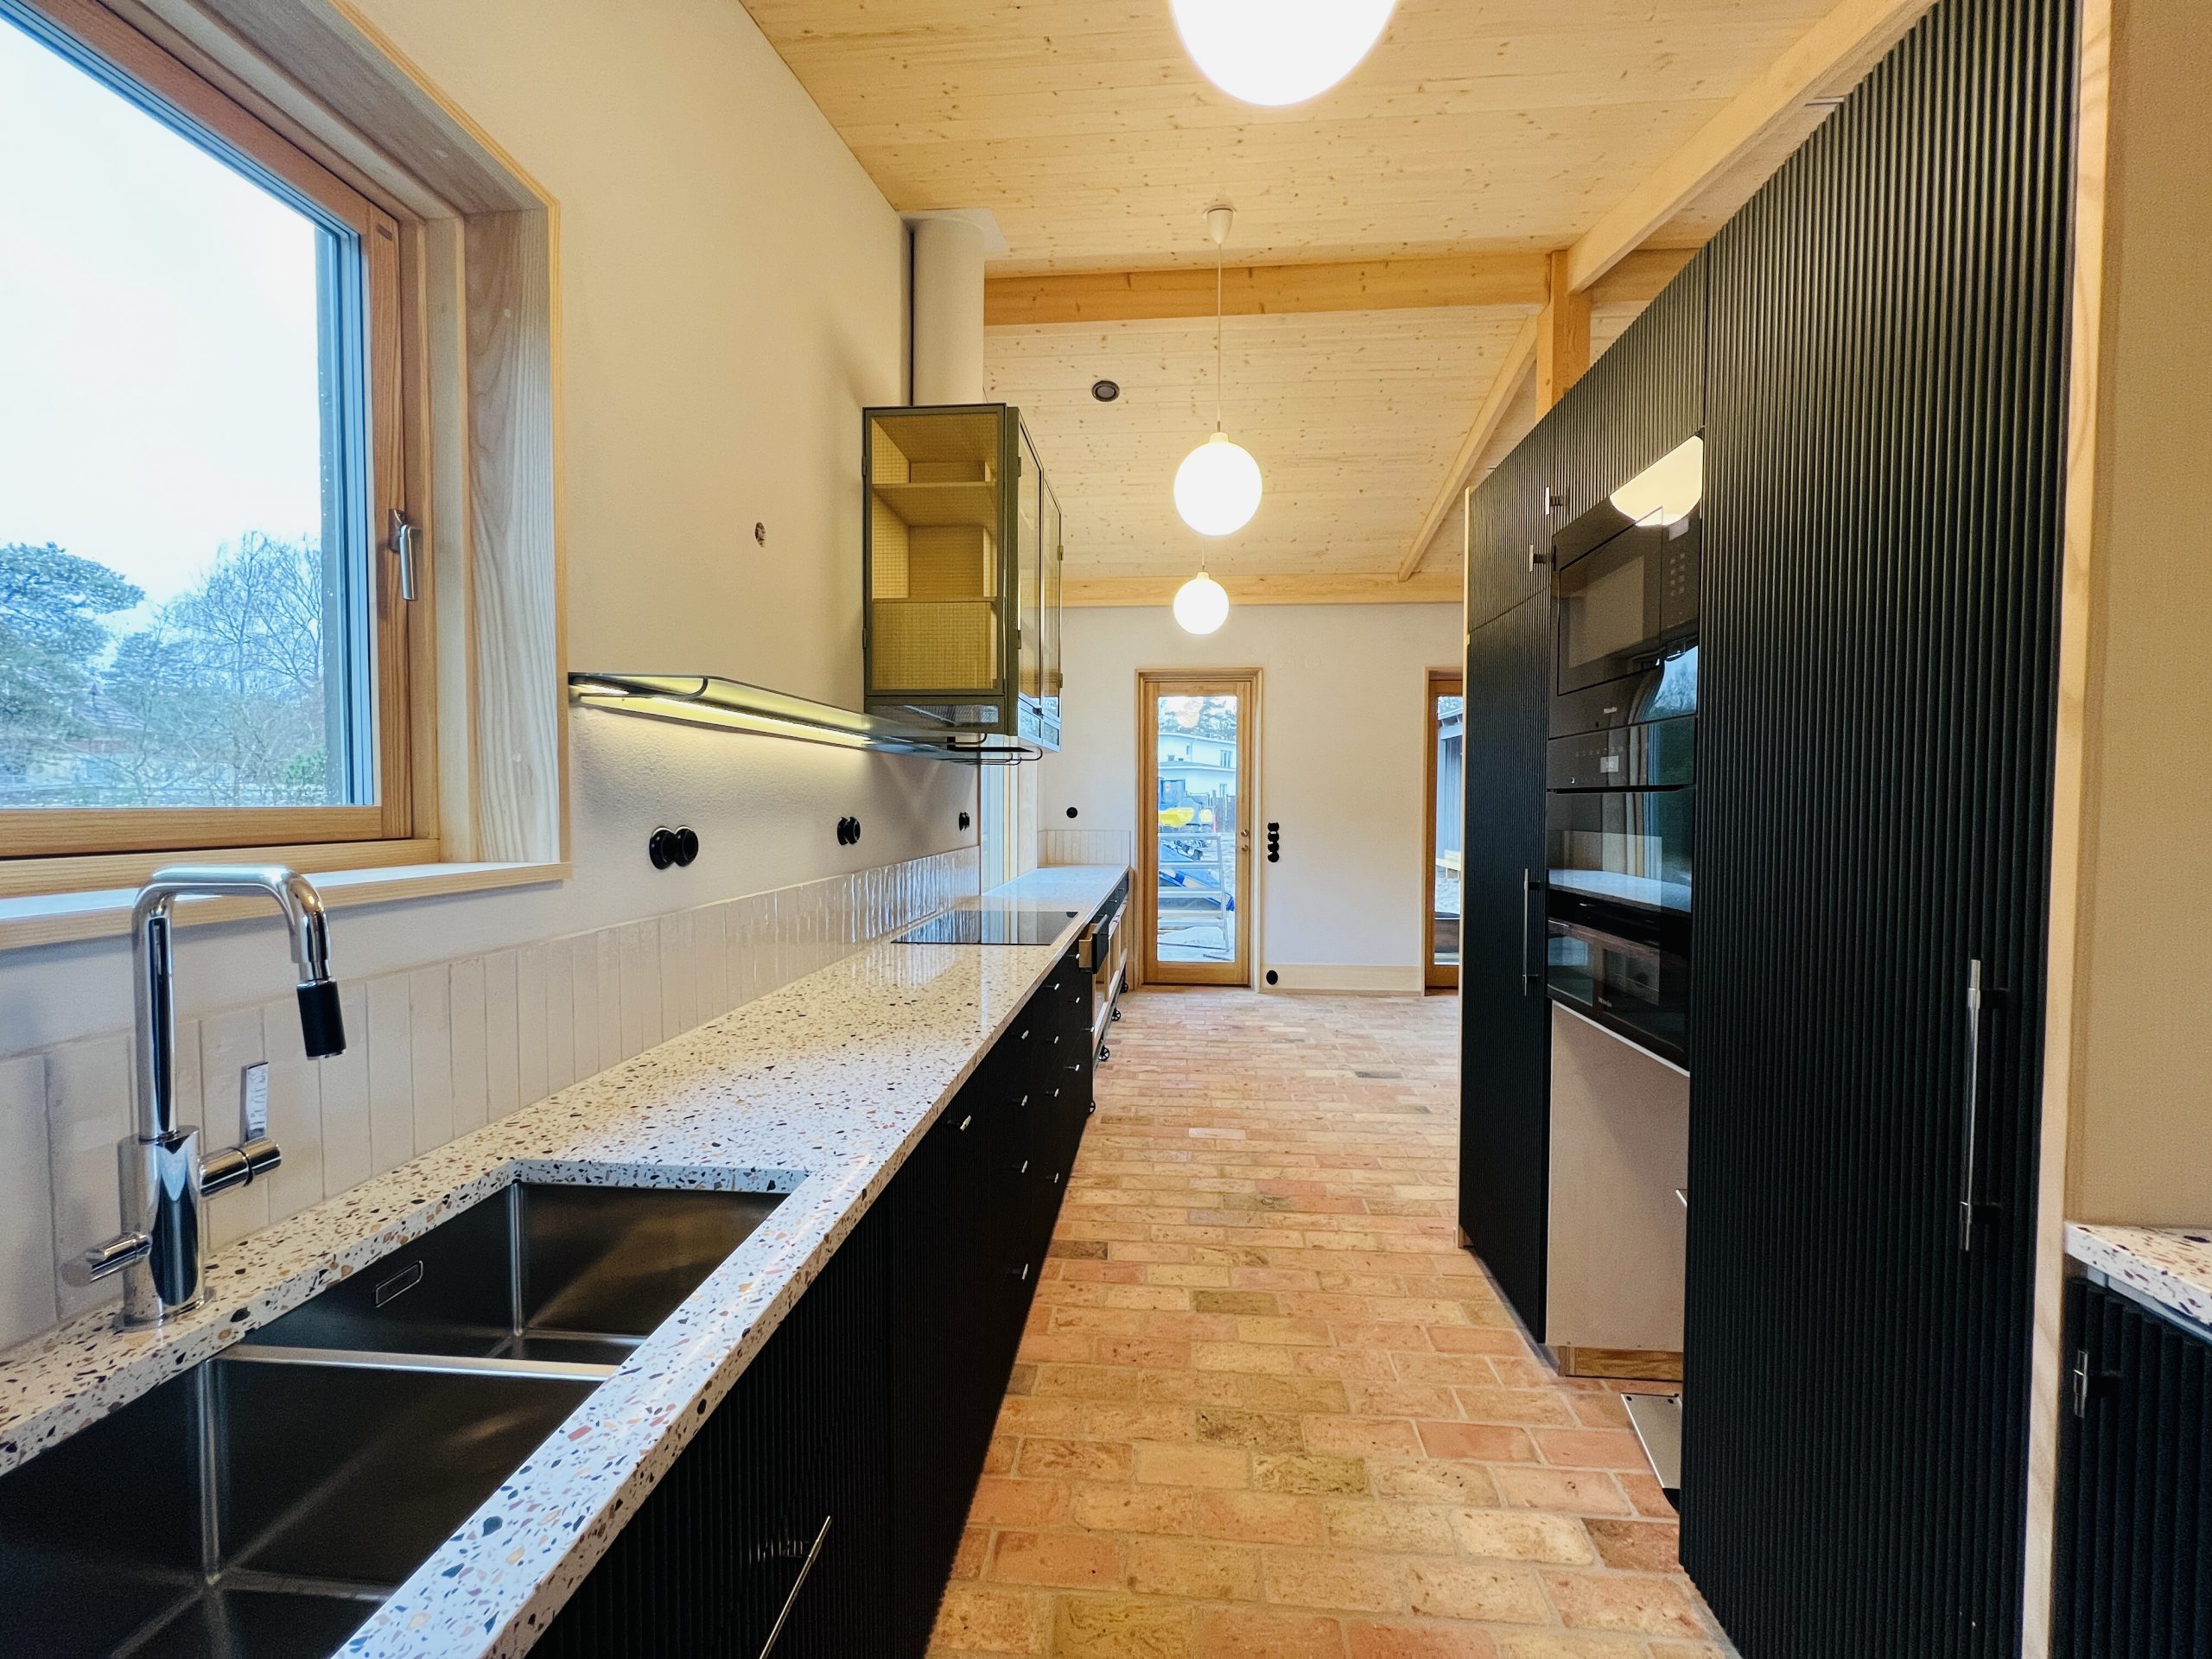 Platsbyggt svart kök med lång härlig bänkskiva utan överskåp